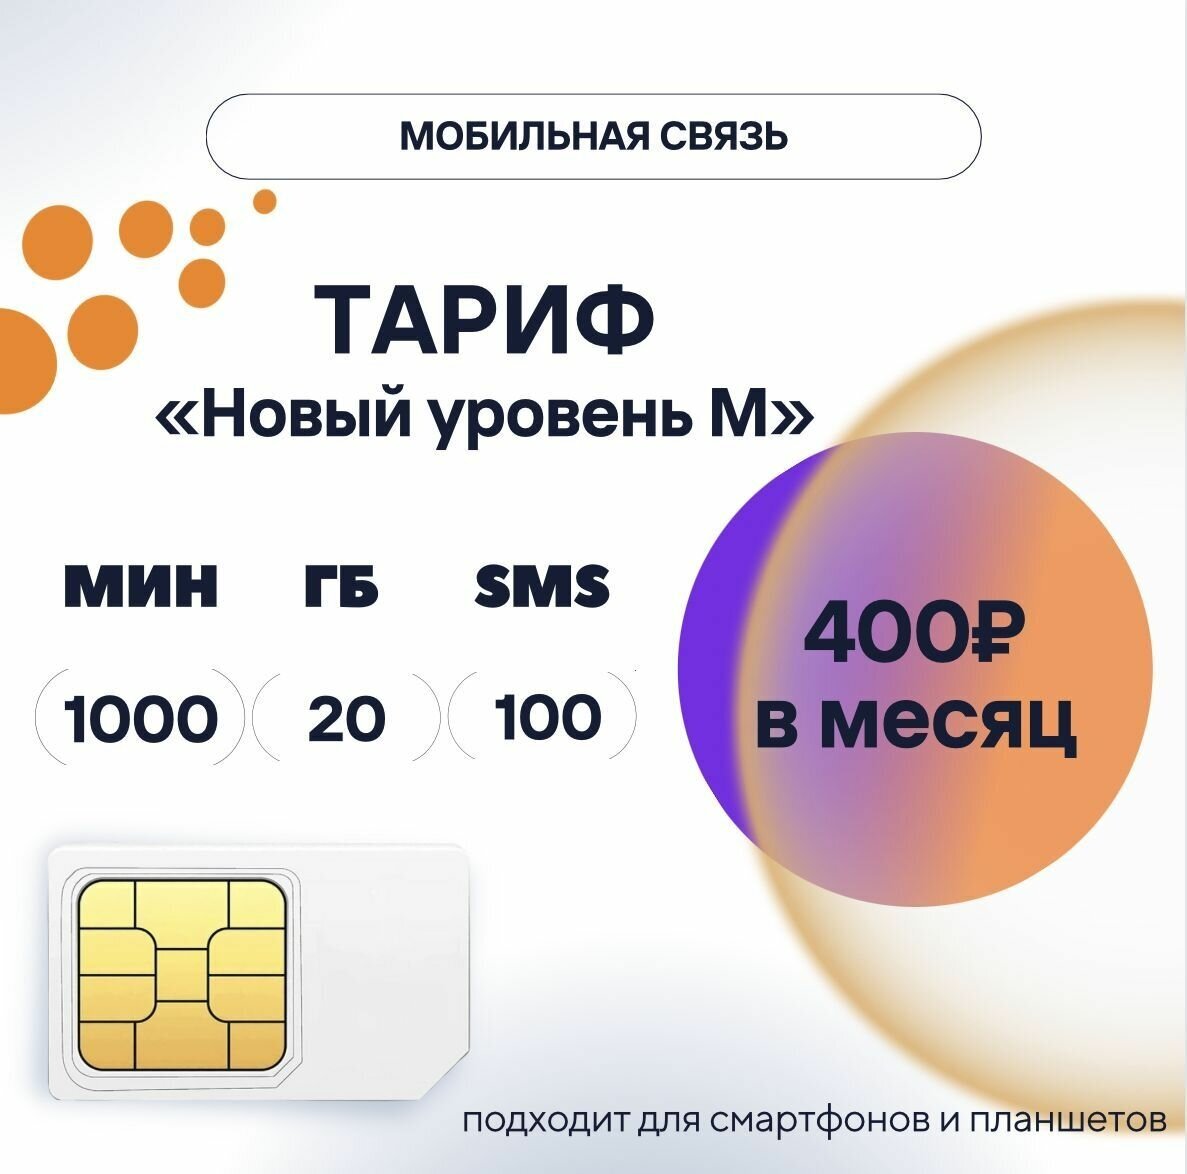 SIM-карта 400 руб/мес, 20 ГБ, 1000 мин, 100 смс, тариф "Новый уровень M", сим карта для телефона